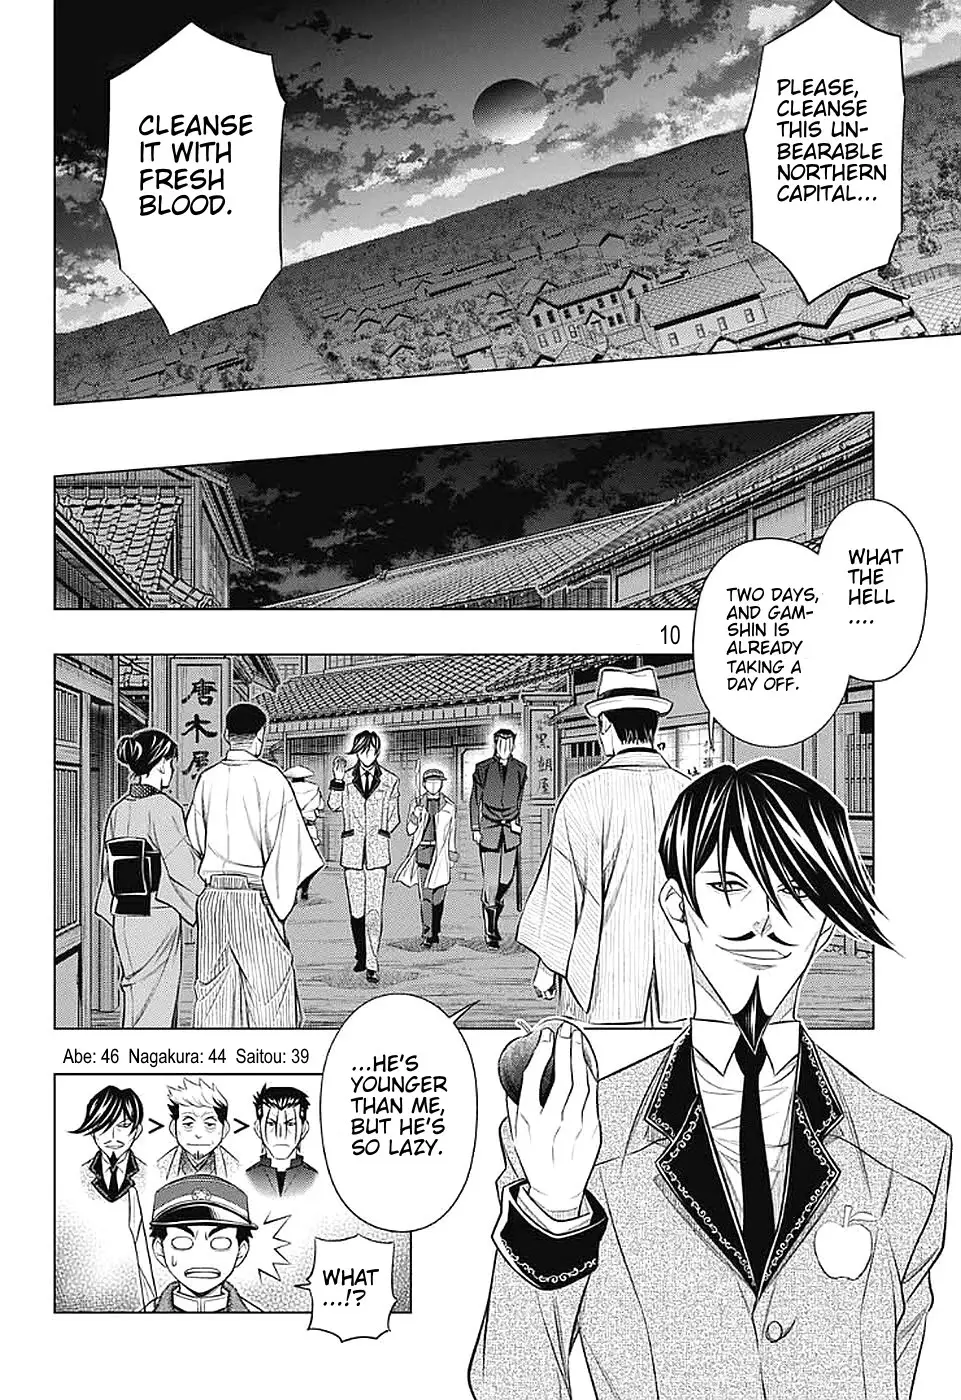 Rurouni Kenshin: Hokkaido Arc - 38 page 10